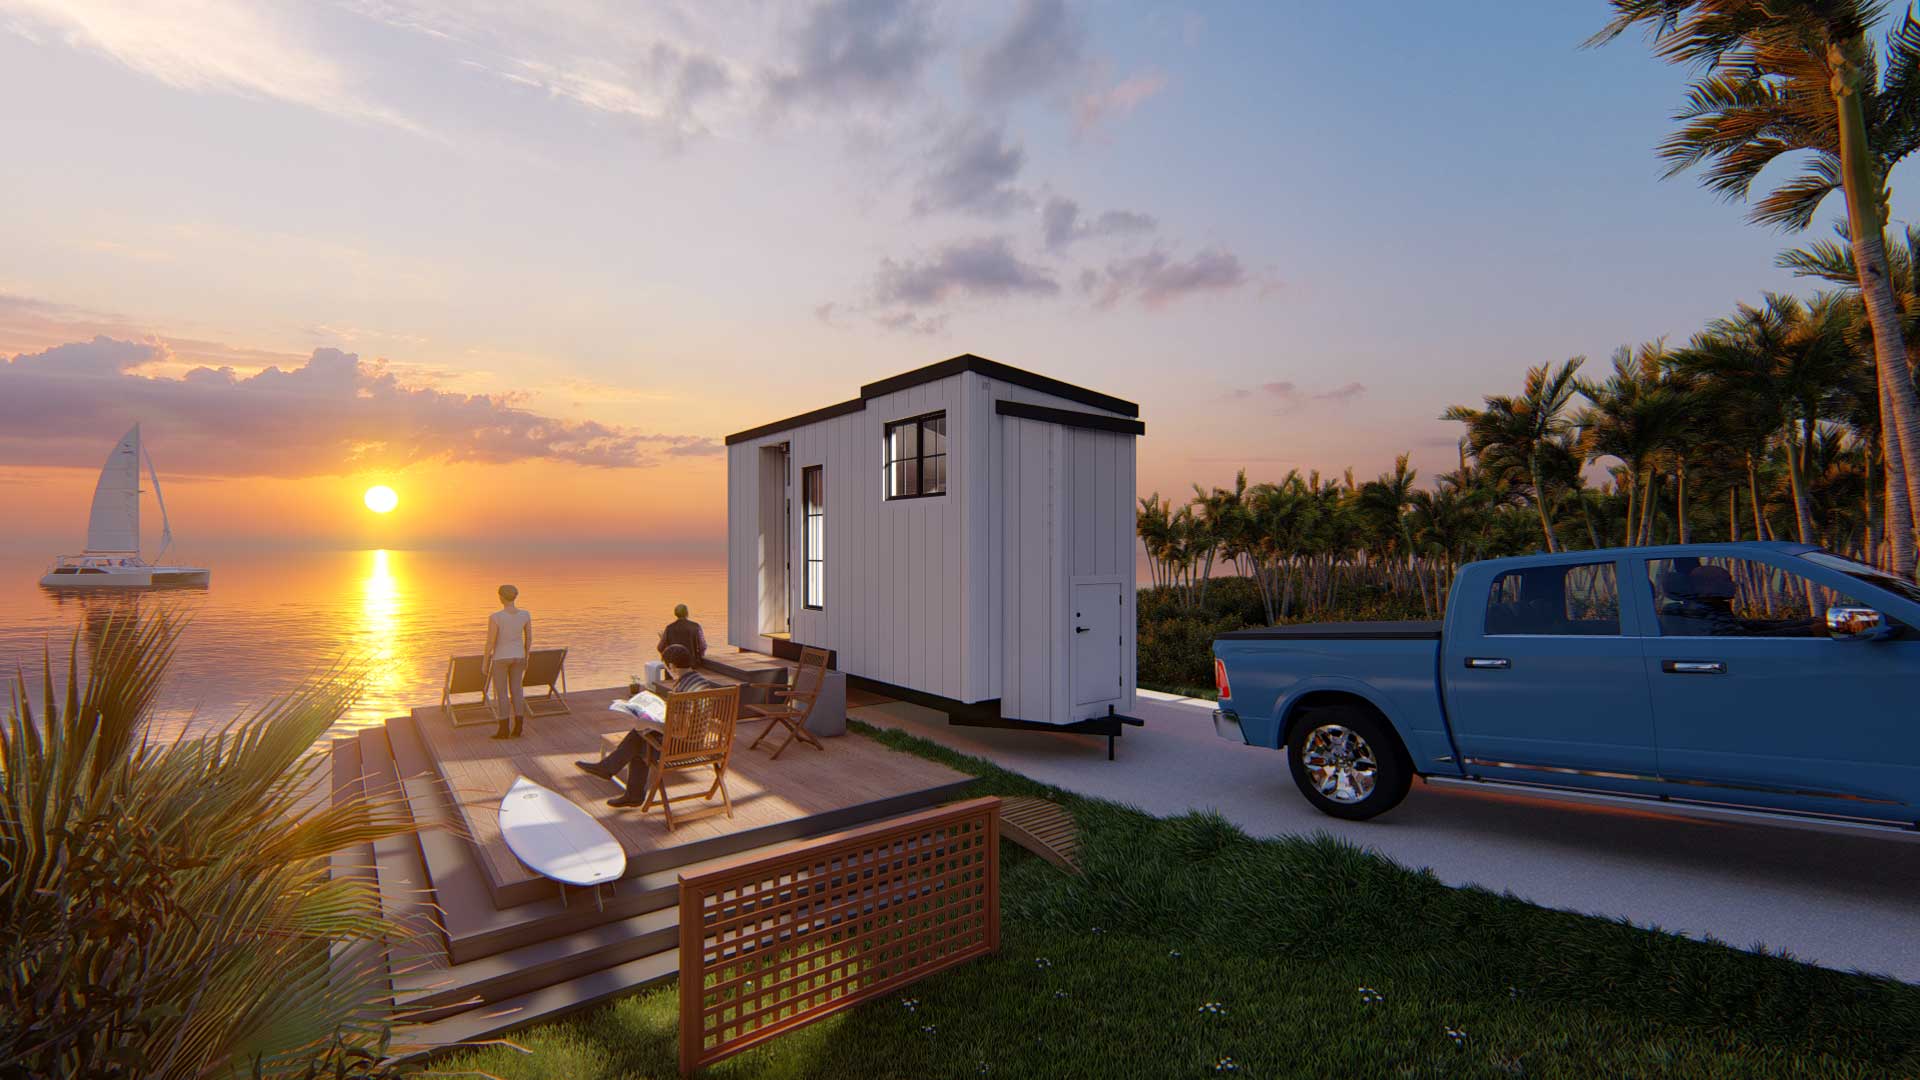 Keepsake Farmhouse 3D model at sunset overlooking the ocean